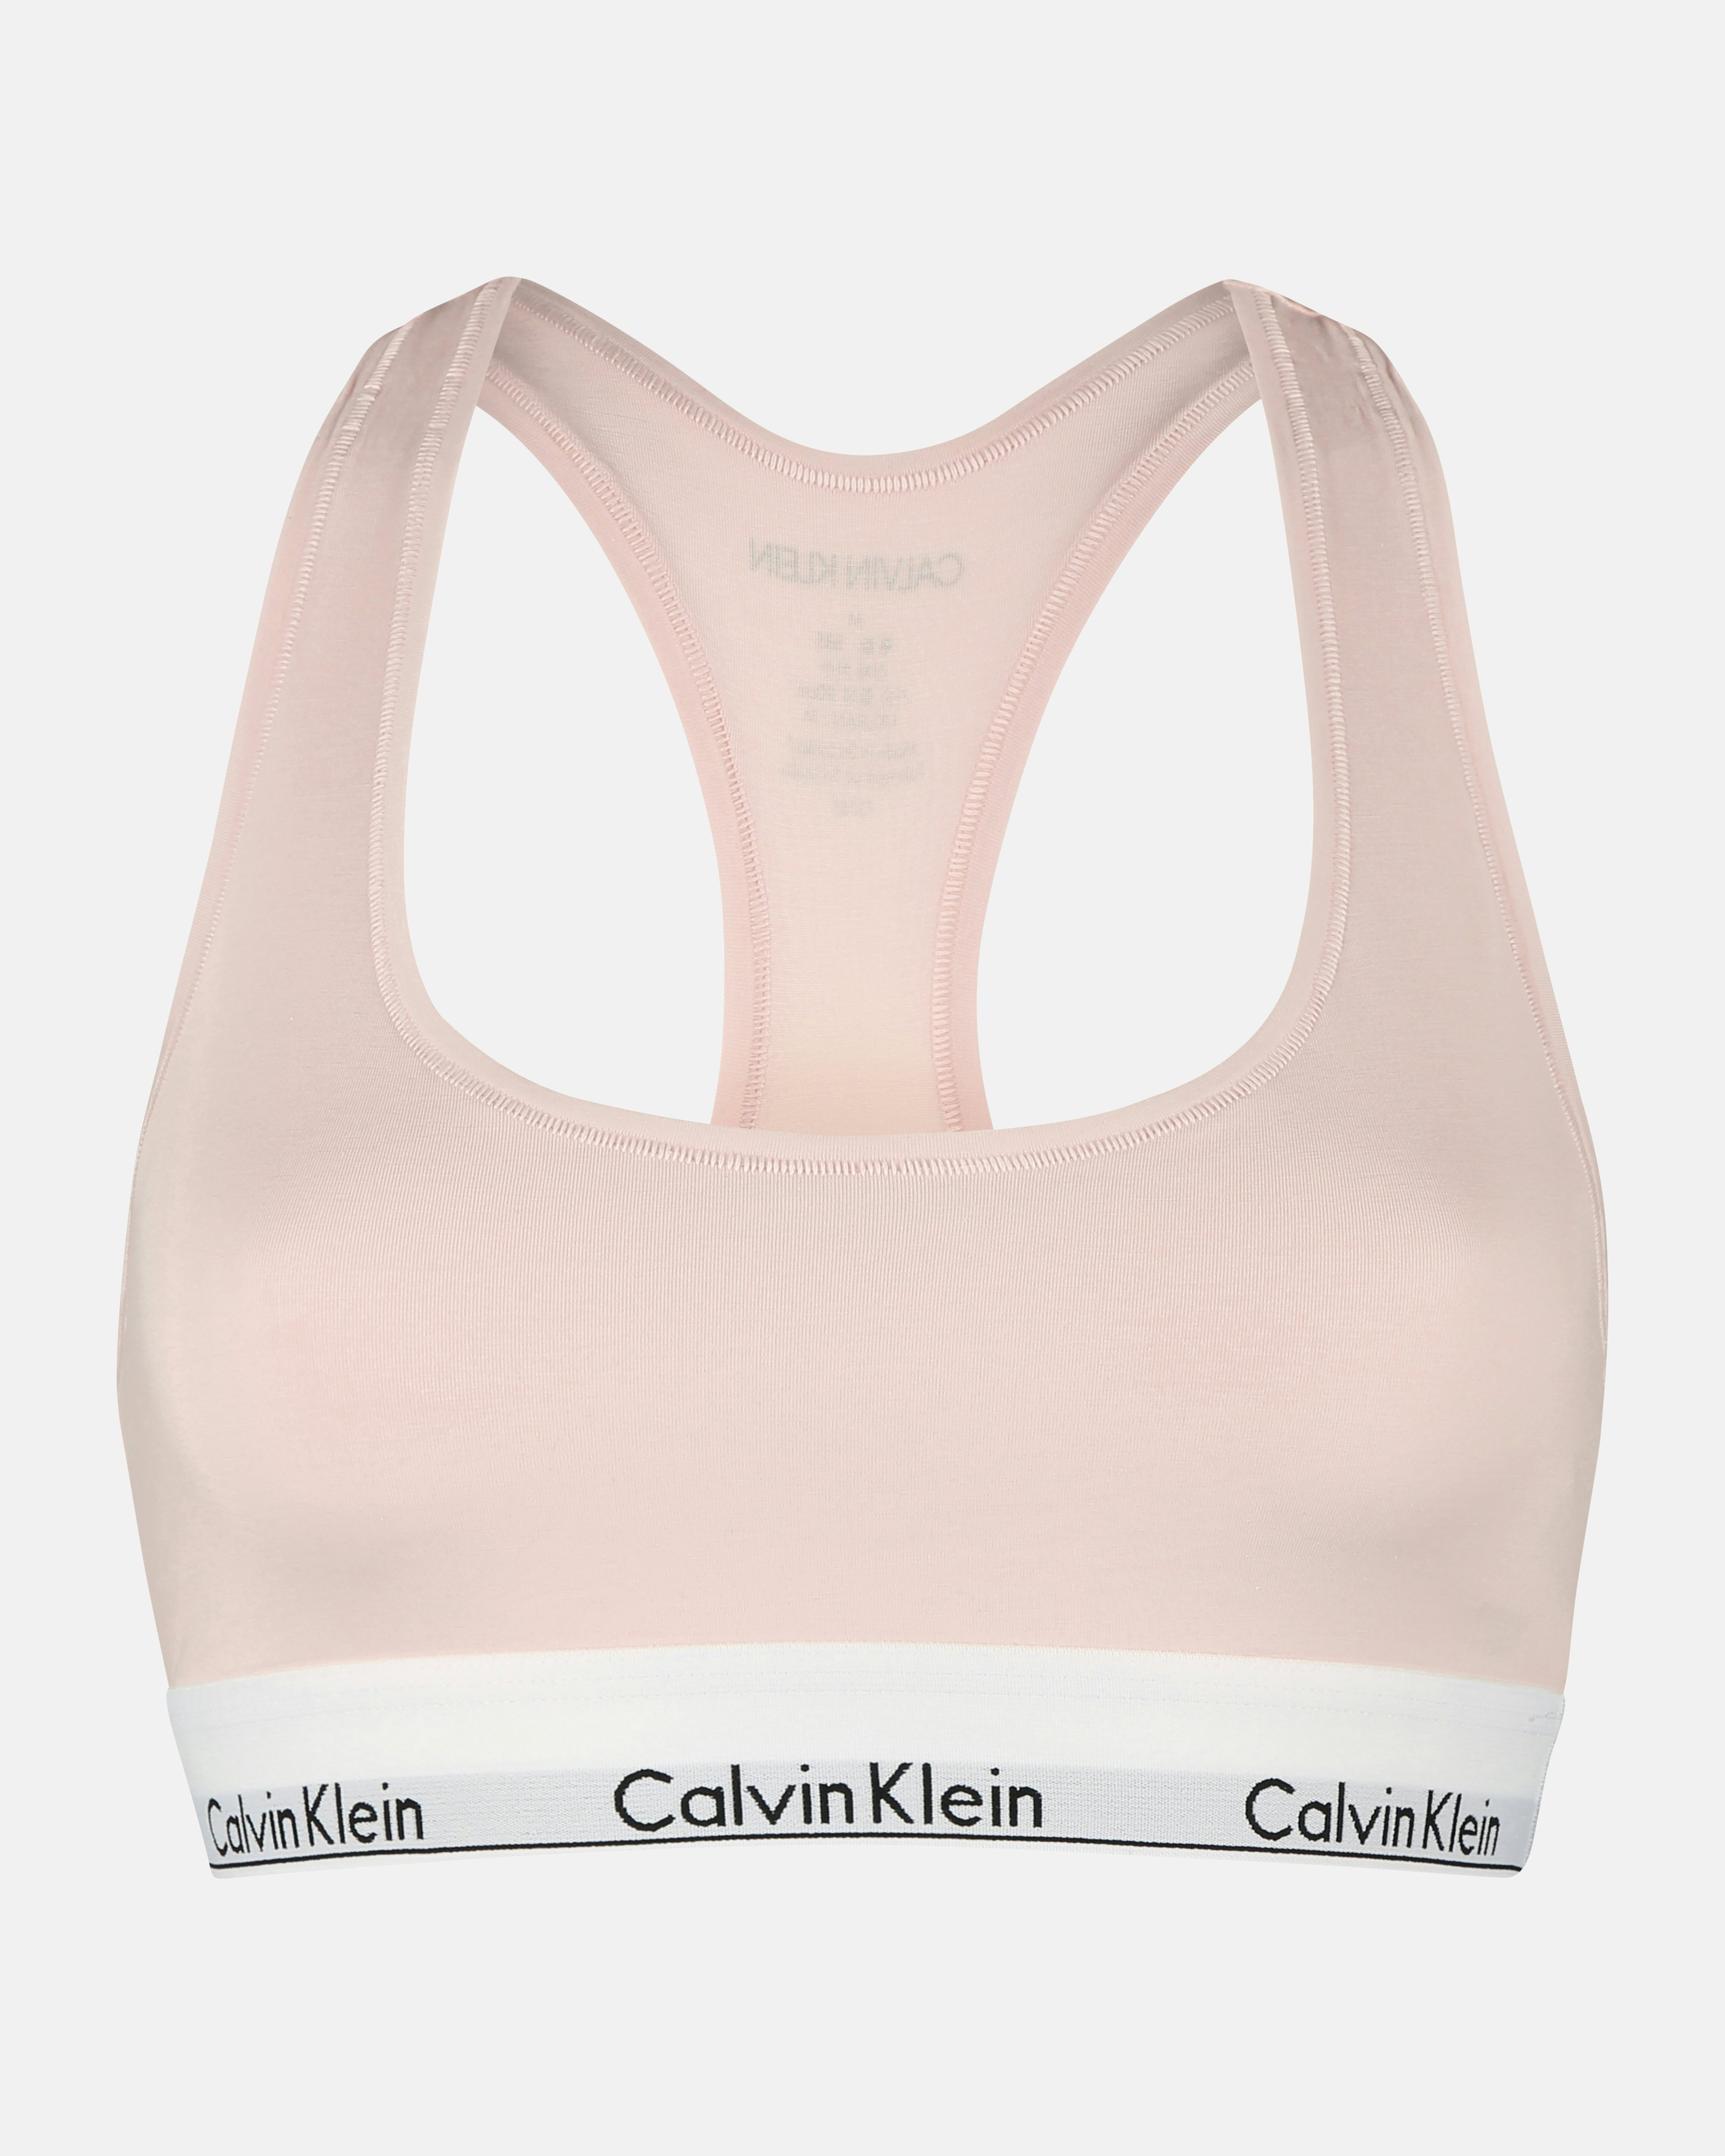 Calvin Klein Bra Small Pink Lift Cross RacerBack Modern Cotton